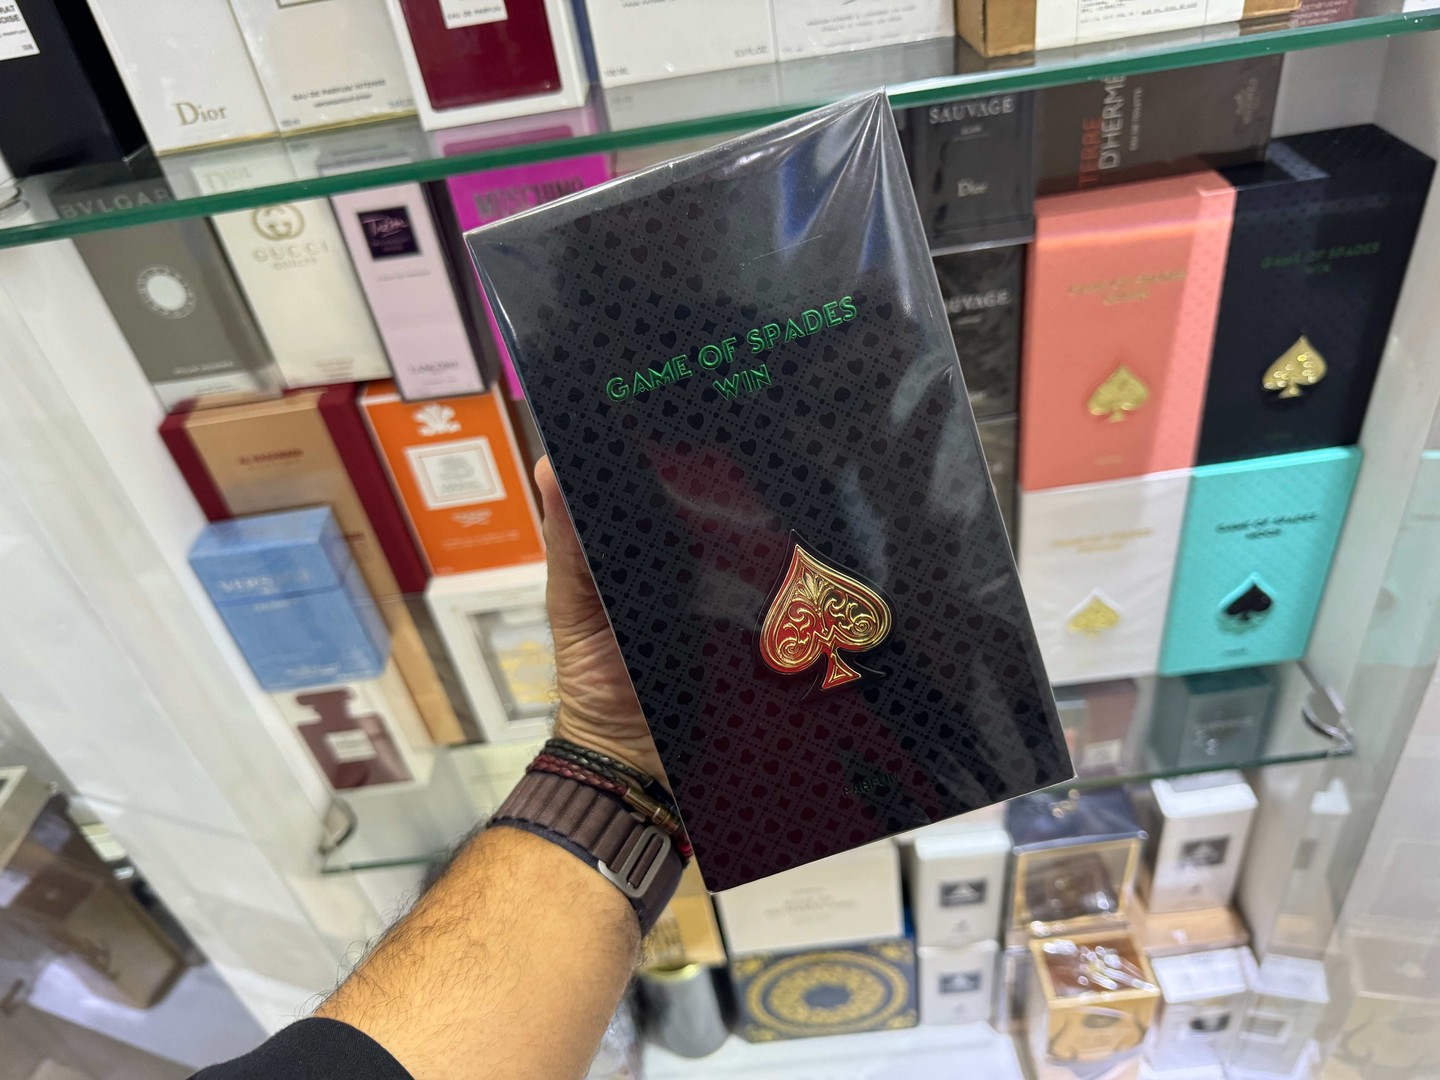 joyas, relojes y accesorios - Perfume Game of Spades Win Jo Milano Nuevo Sellado, RD$ 5,800 NEG 0